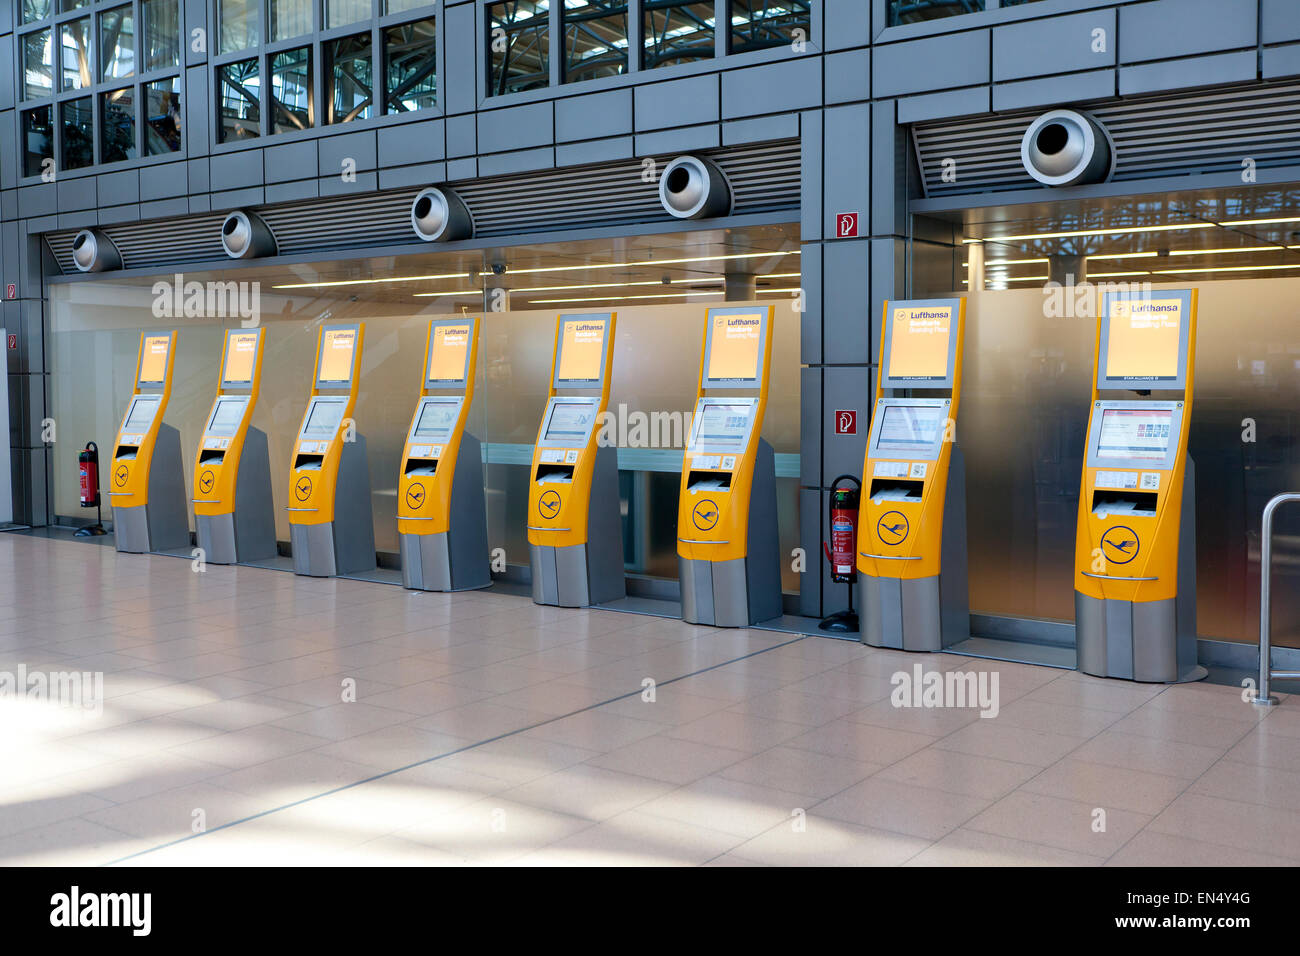 automatischer Check-in Schalter Lufthansa am Flughafen Hamburg  Stockfotografie - Alamy